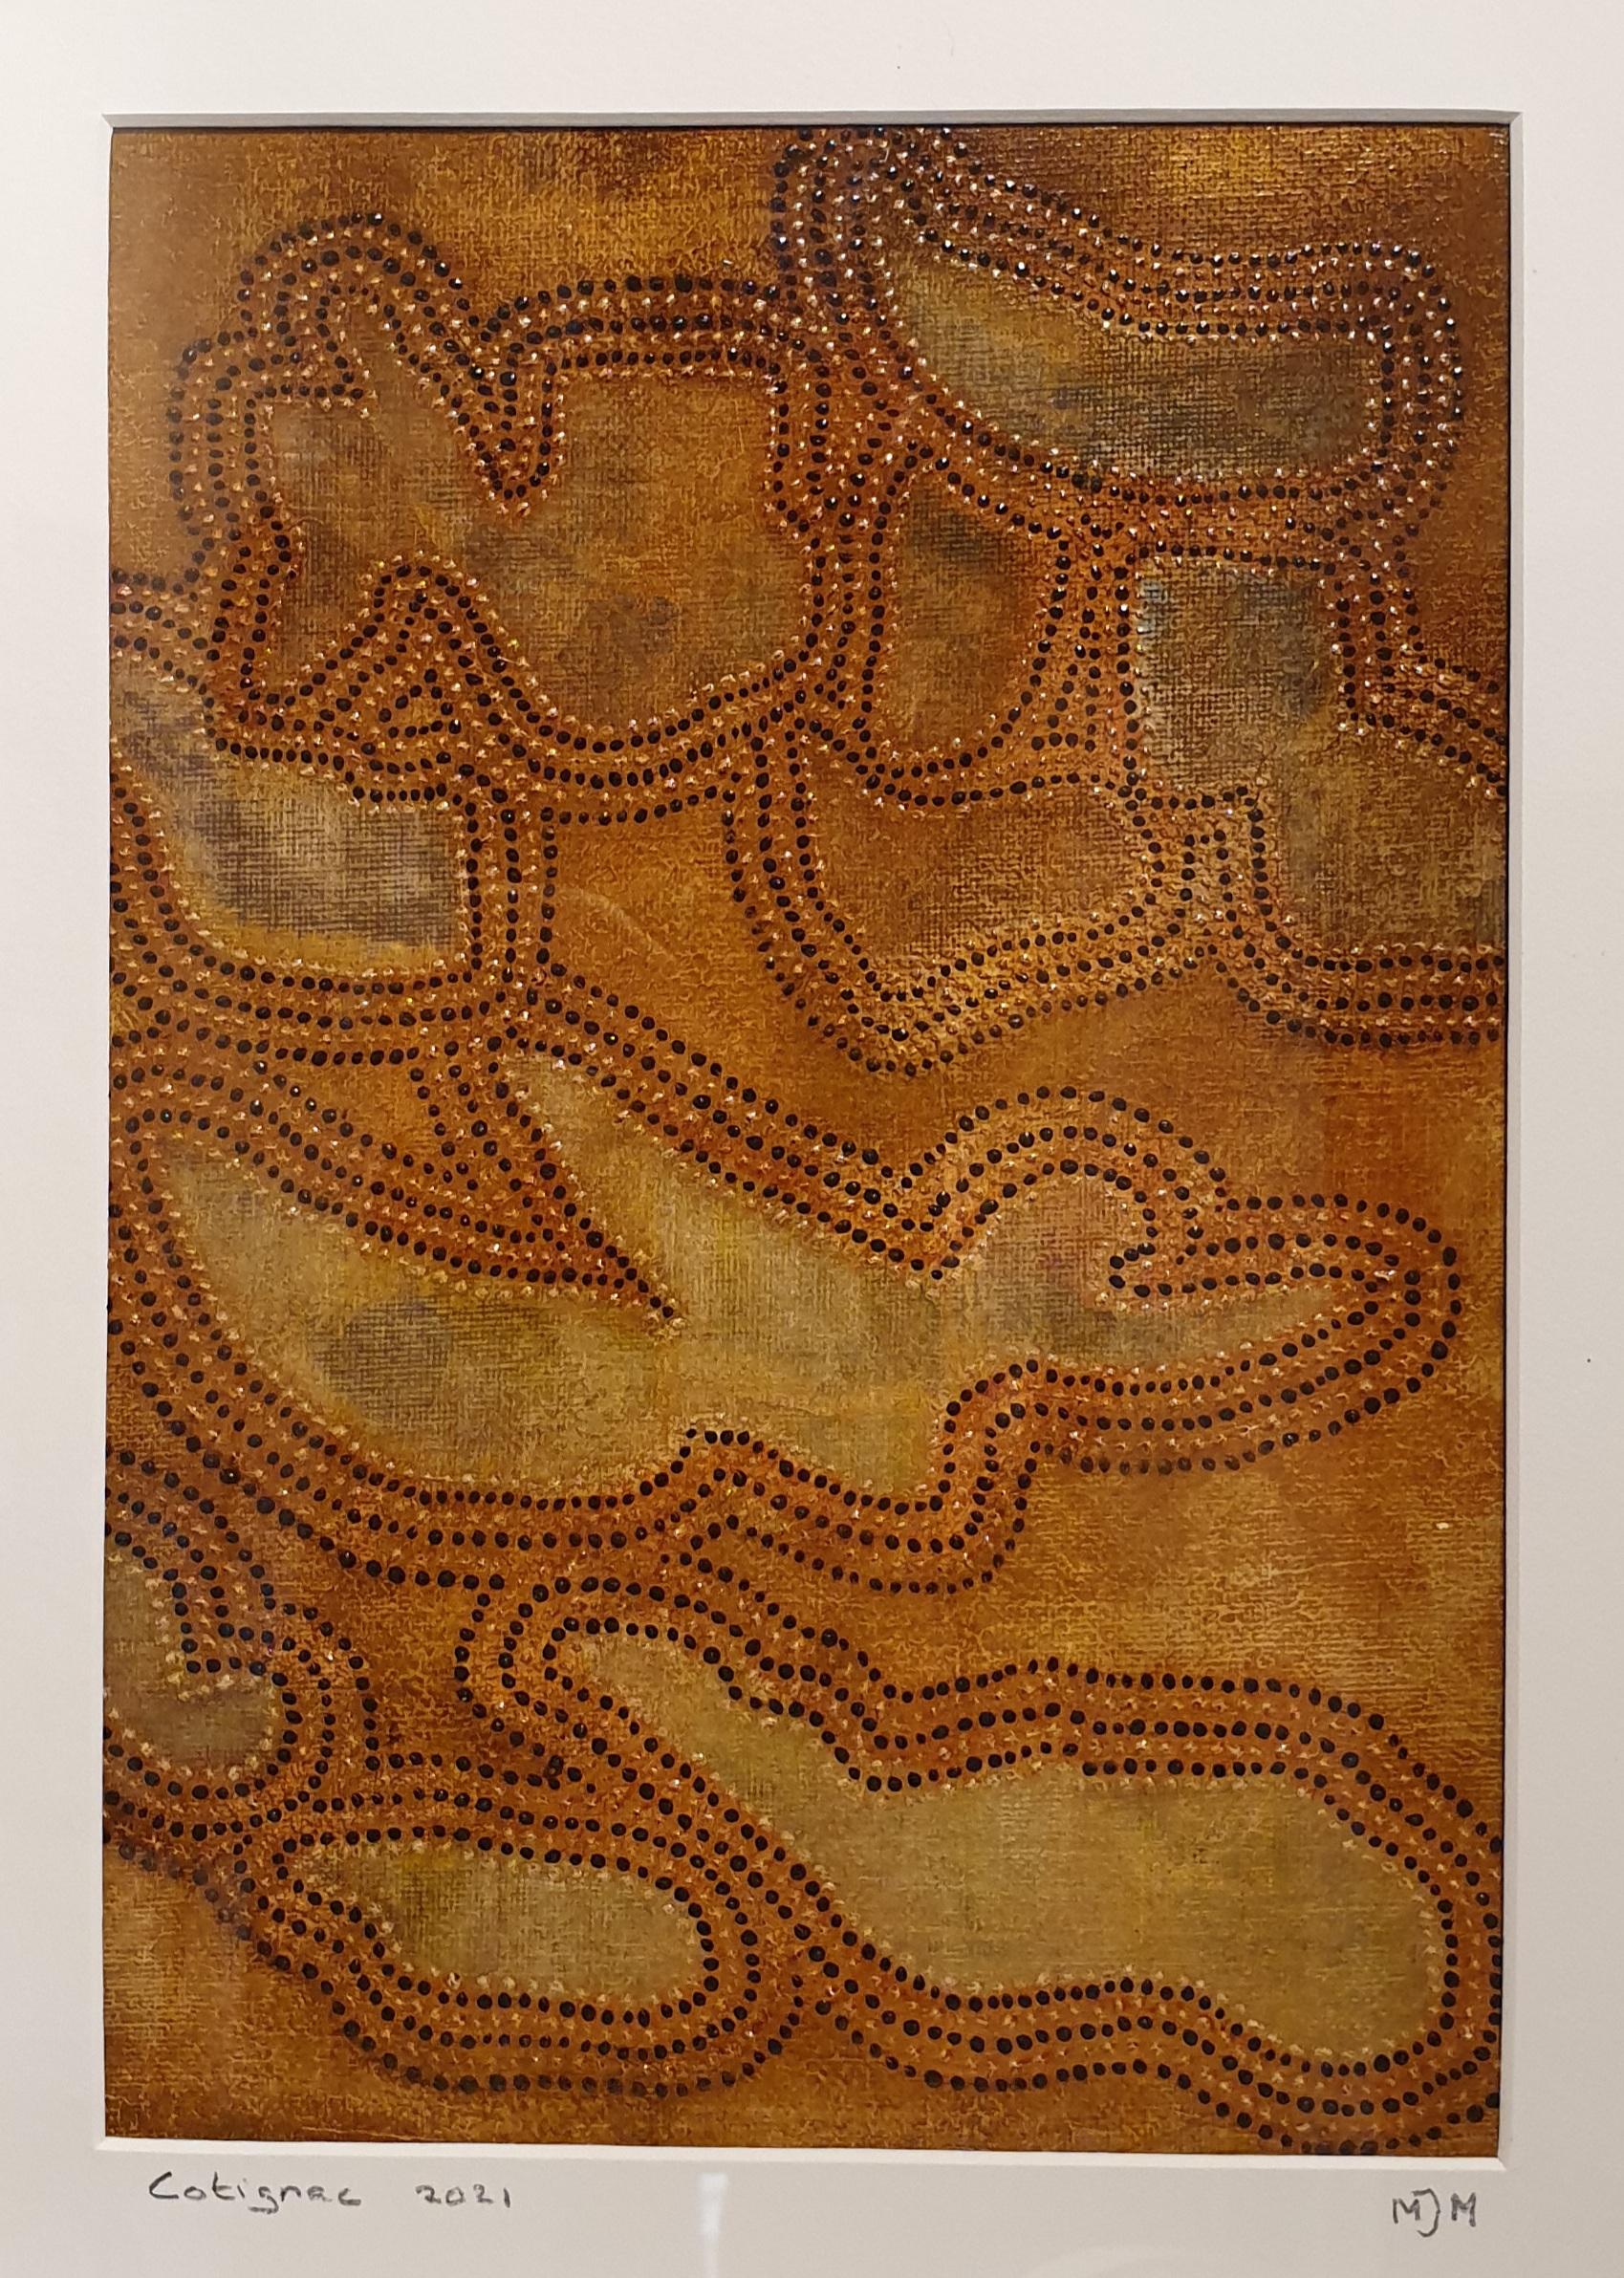 Menno Modderman Abstract Painting – Zeitgenössisch von der Aborigine inspirierte abstrakte Skulptur.